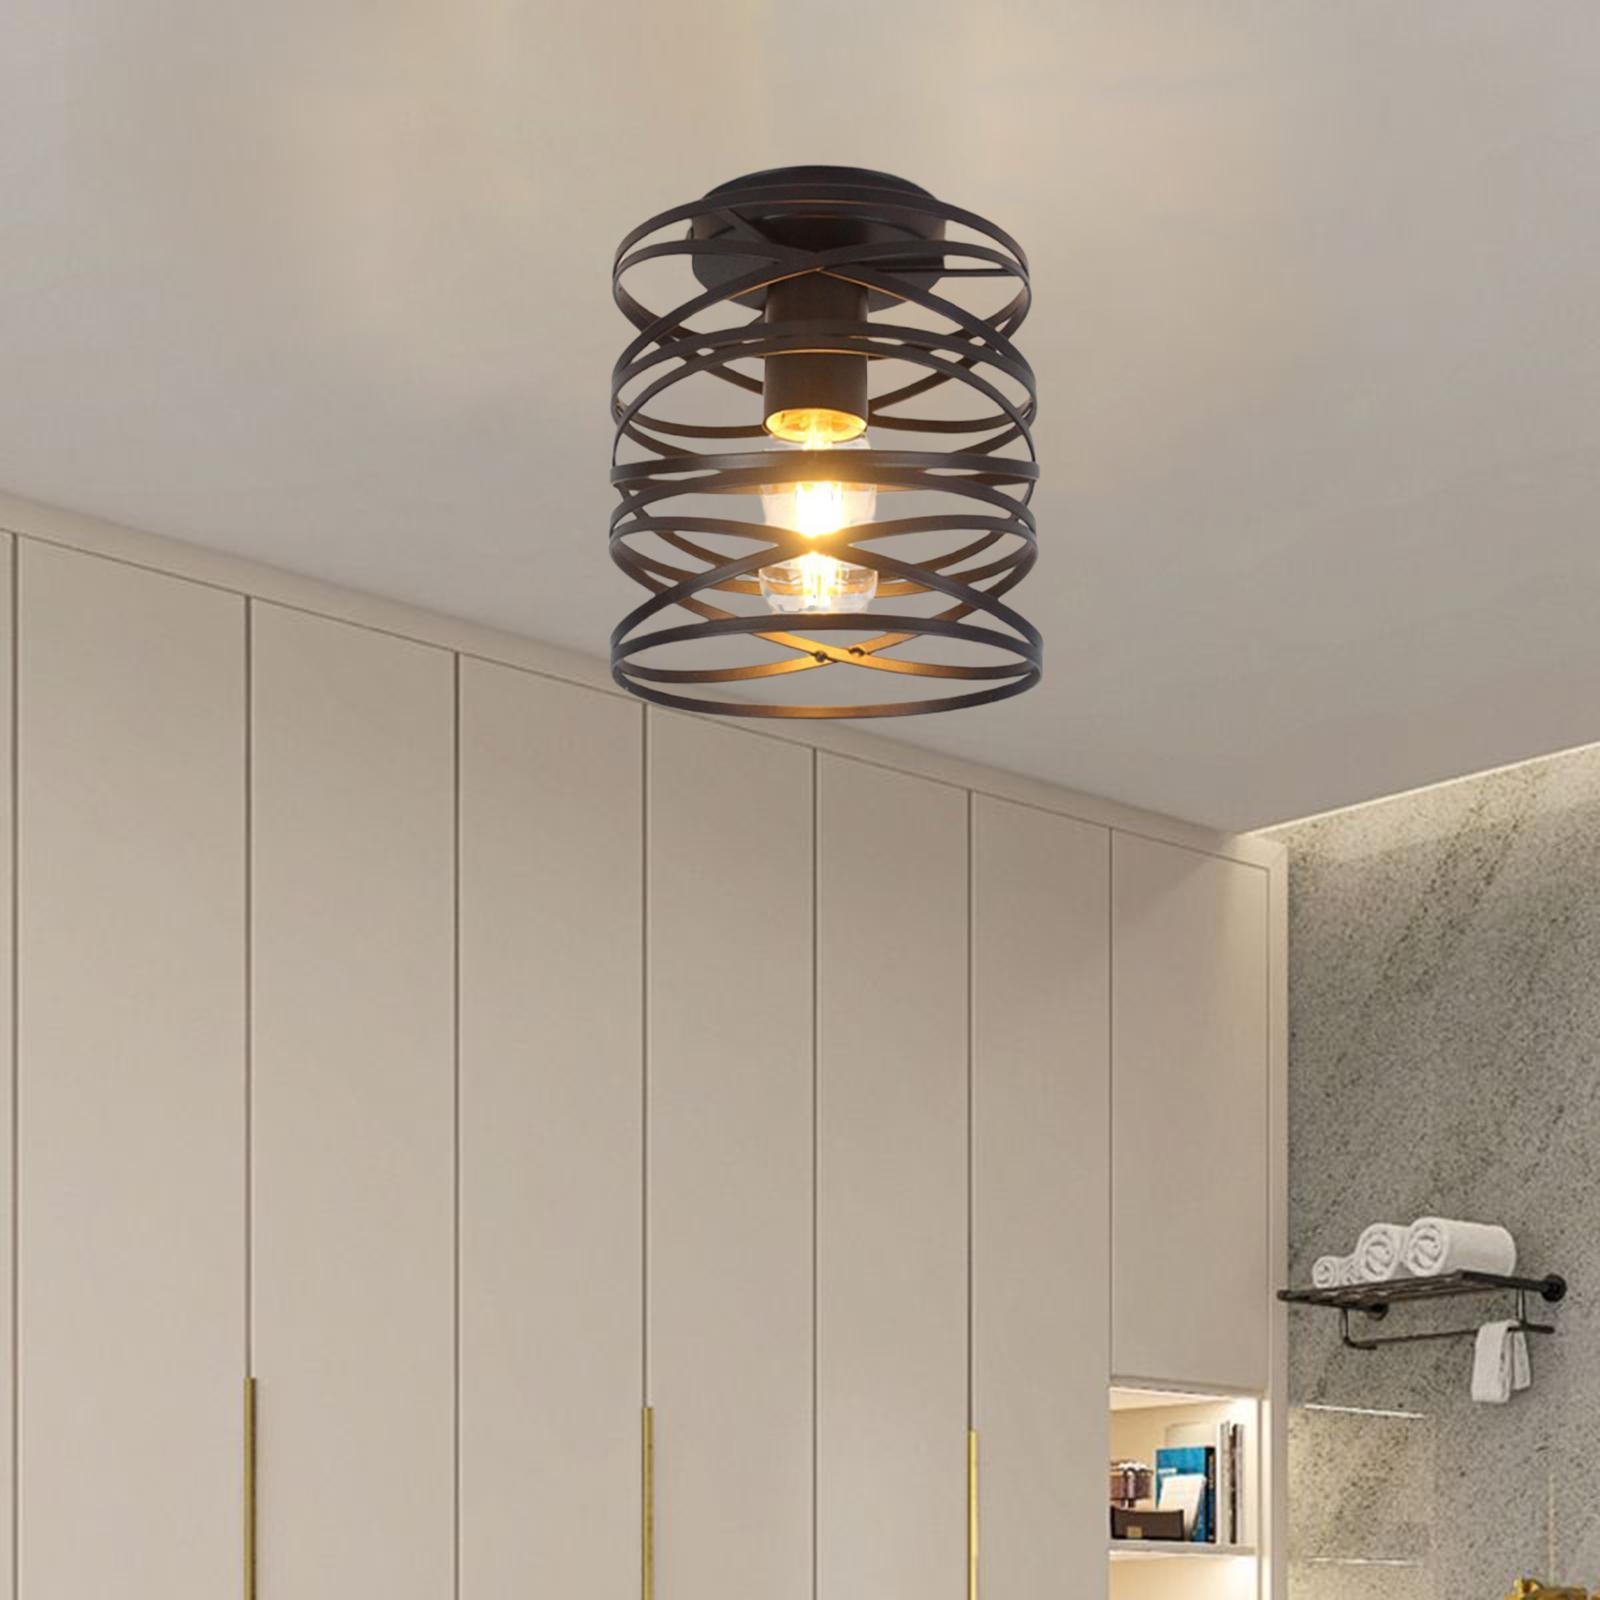 Retro Ceiling Lamp Pendant Light Fixture Lighting for Home Room Loft